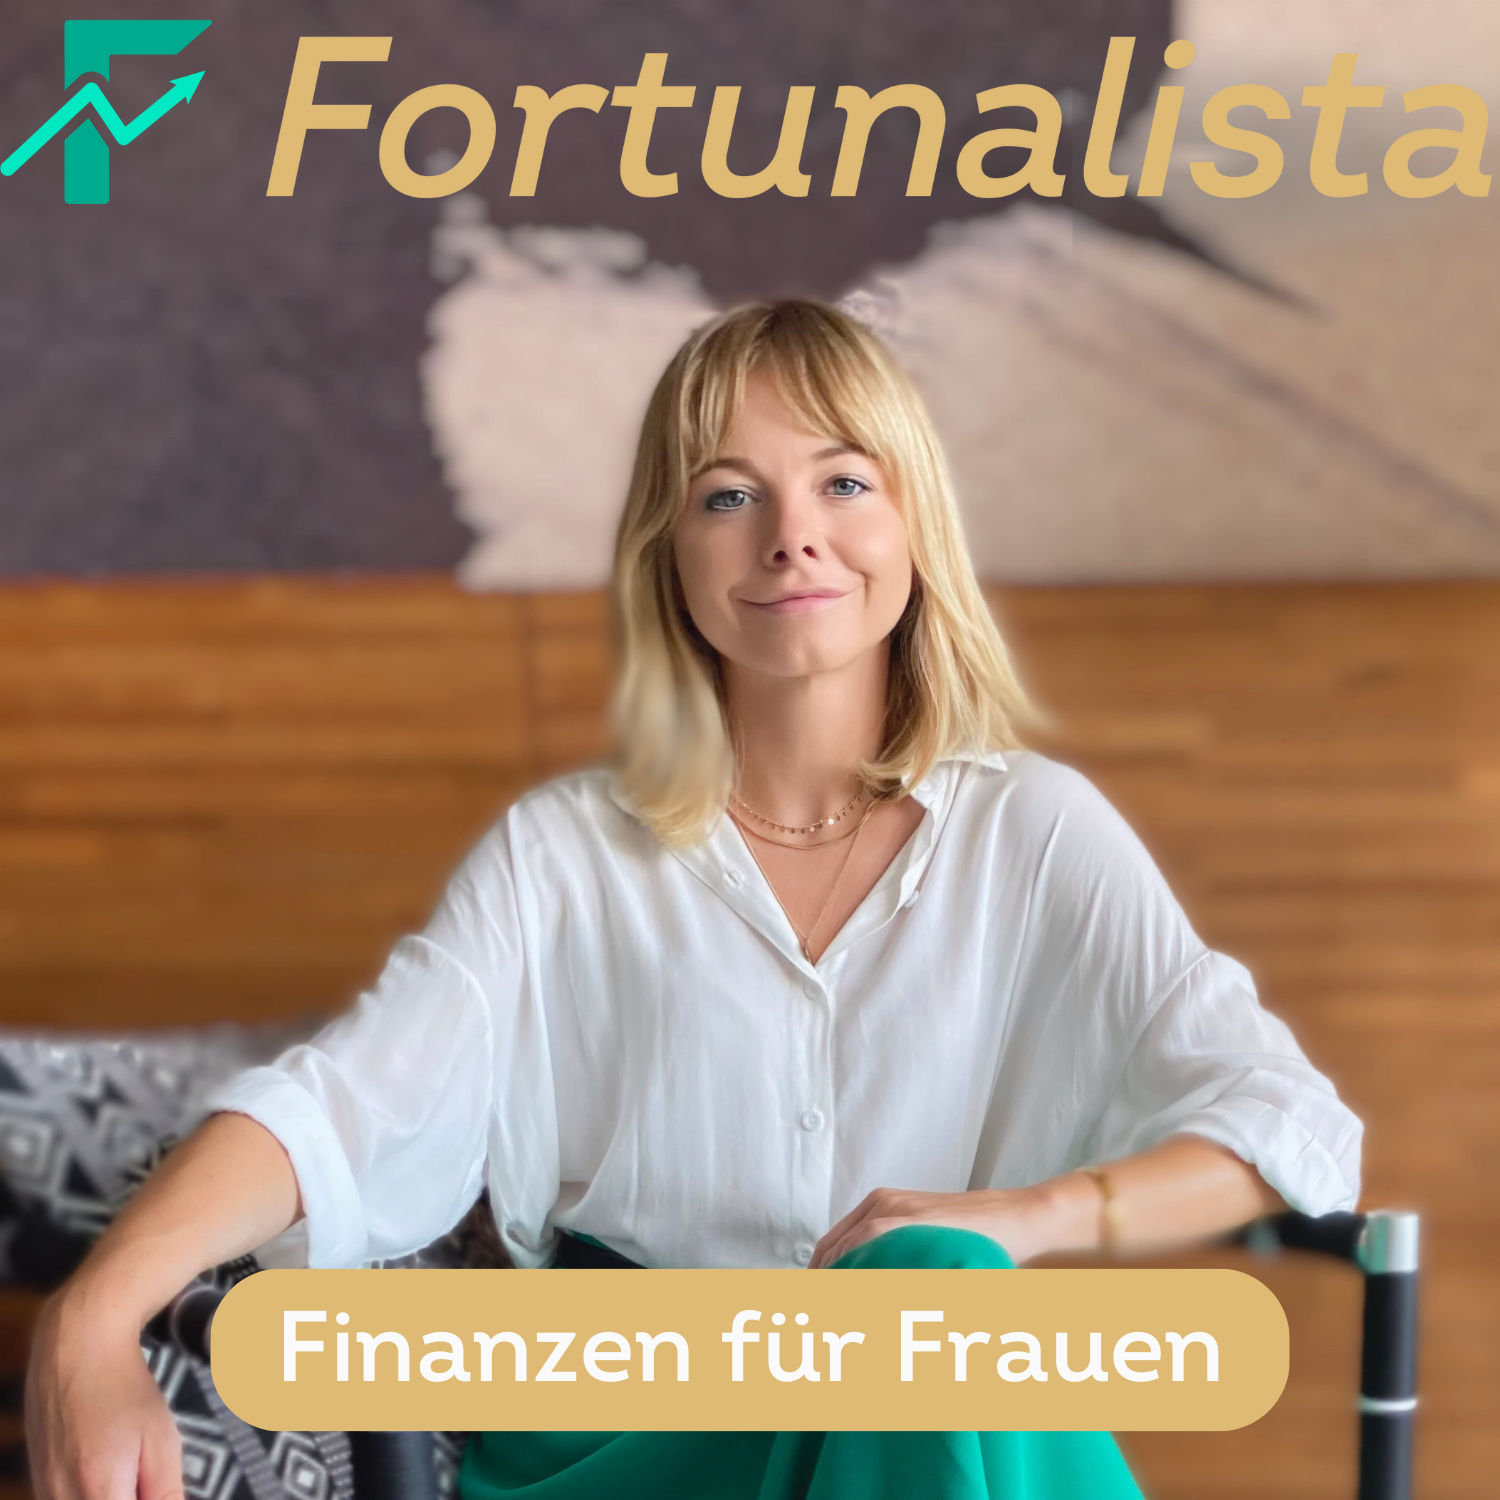 Fortunalista - Der Finanzpodcast - Podcast